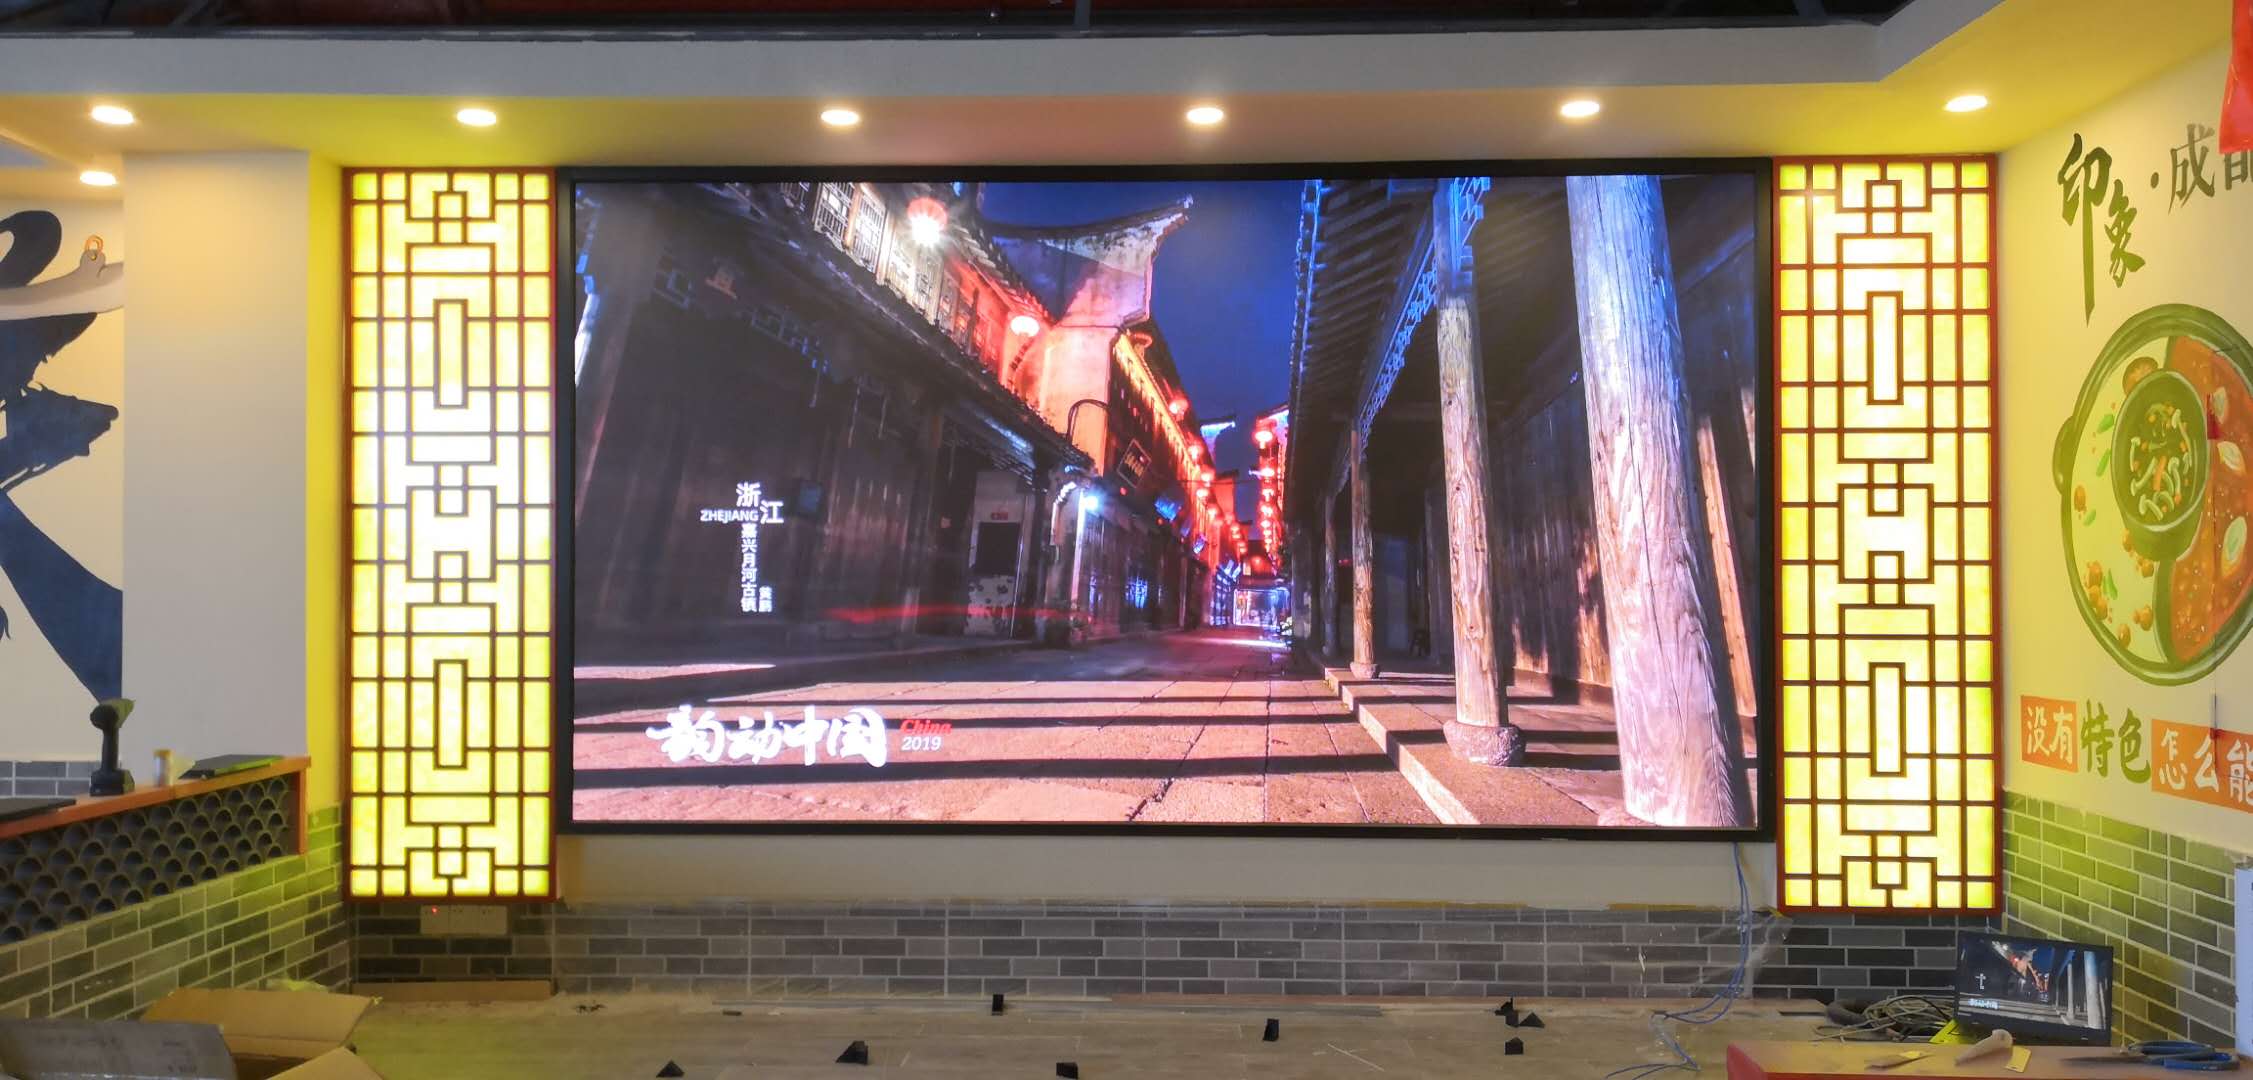 P2.5全彩LED顯示屏-壁掛支架-深圳市寶安區印象成都老火鍋